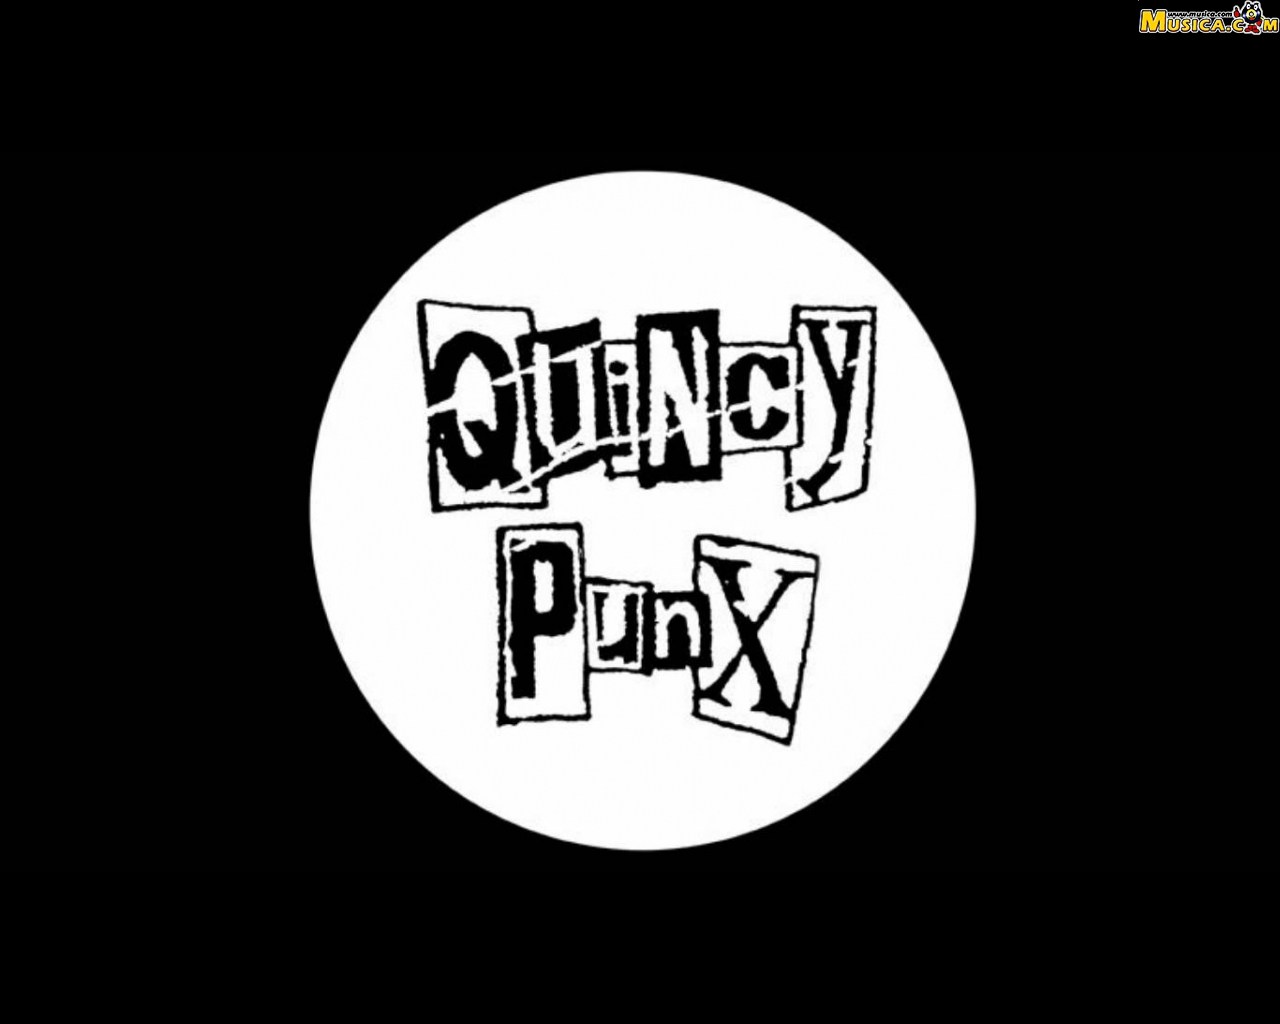 Fondo de pantalla de Quincy Punx